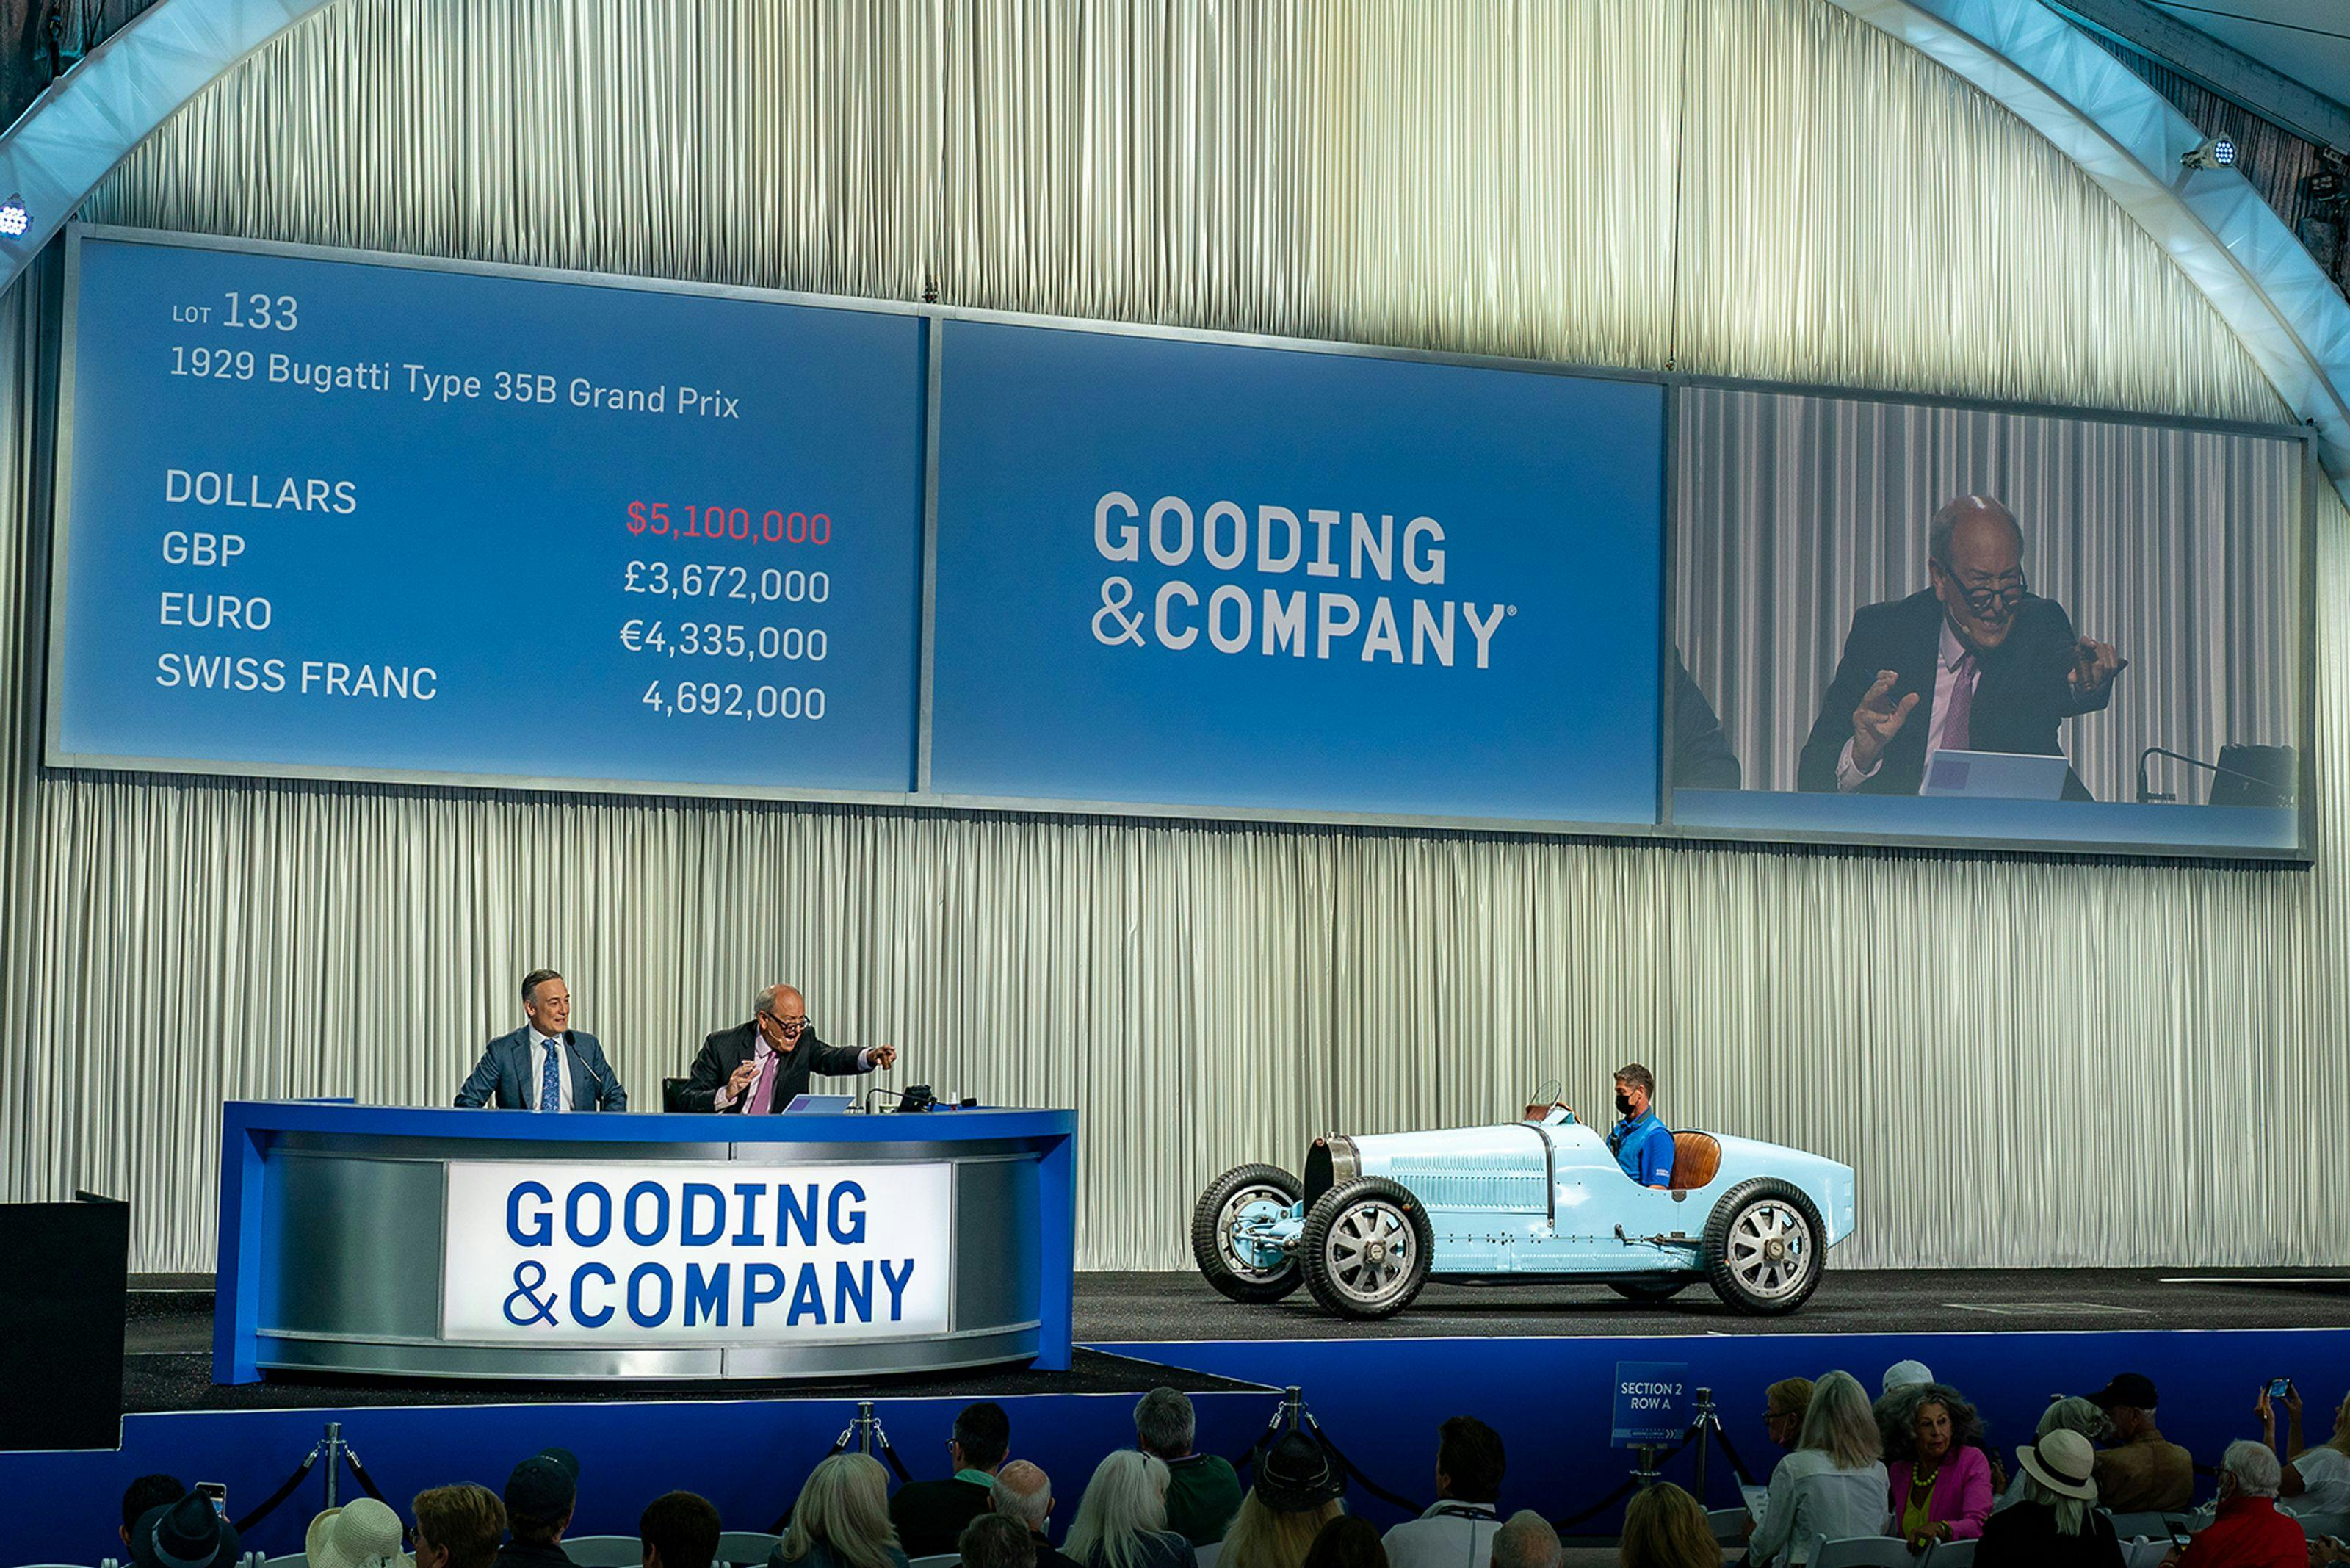 Les modèles Bugatti remportent de nombreux prix et établissent des records d'enchères à la Monterey Car Week.